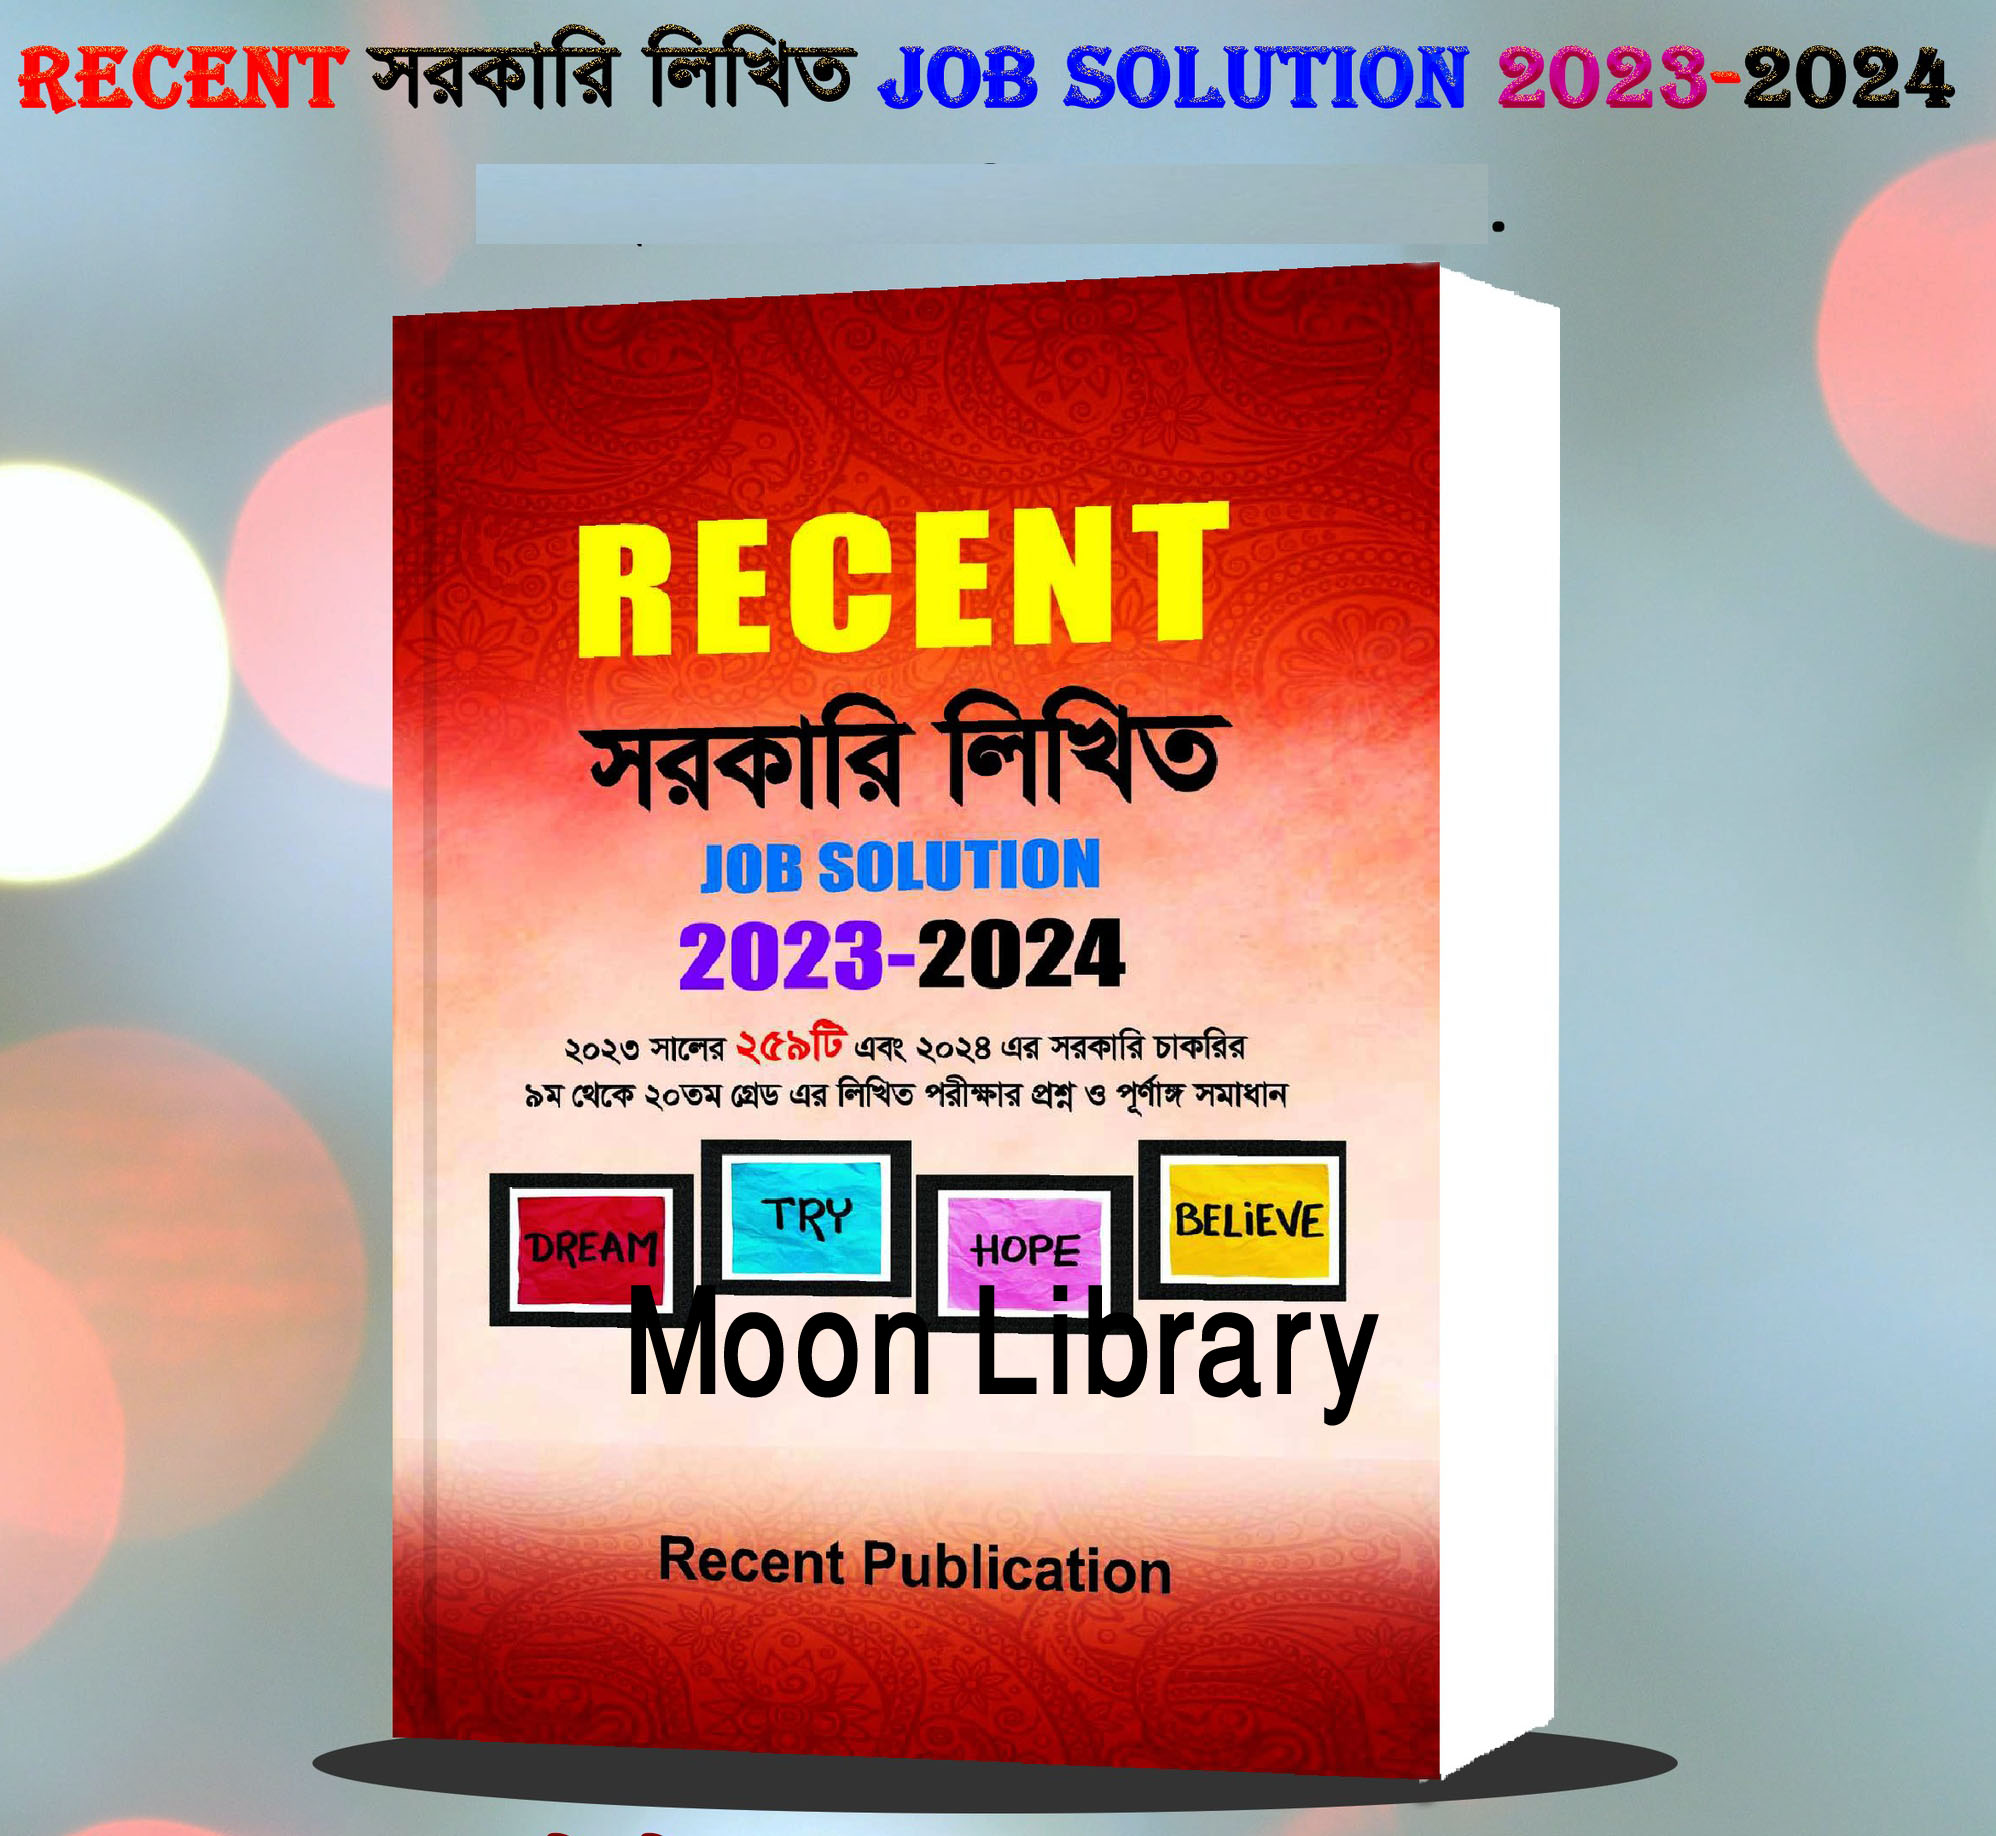 Recent Govt. Written job Solution 2023- 24 / Recent সরকারি লিখিত জব সলিউশন 2023-2024